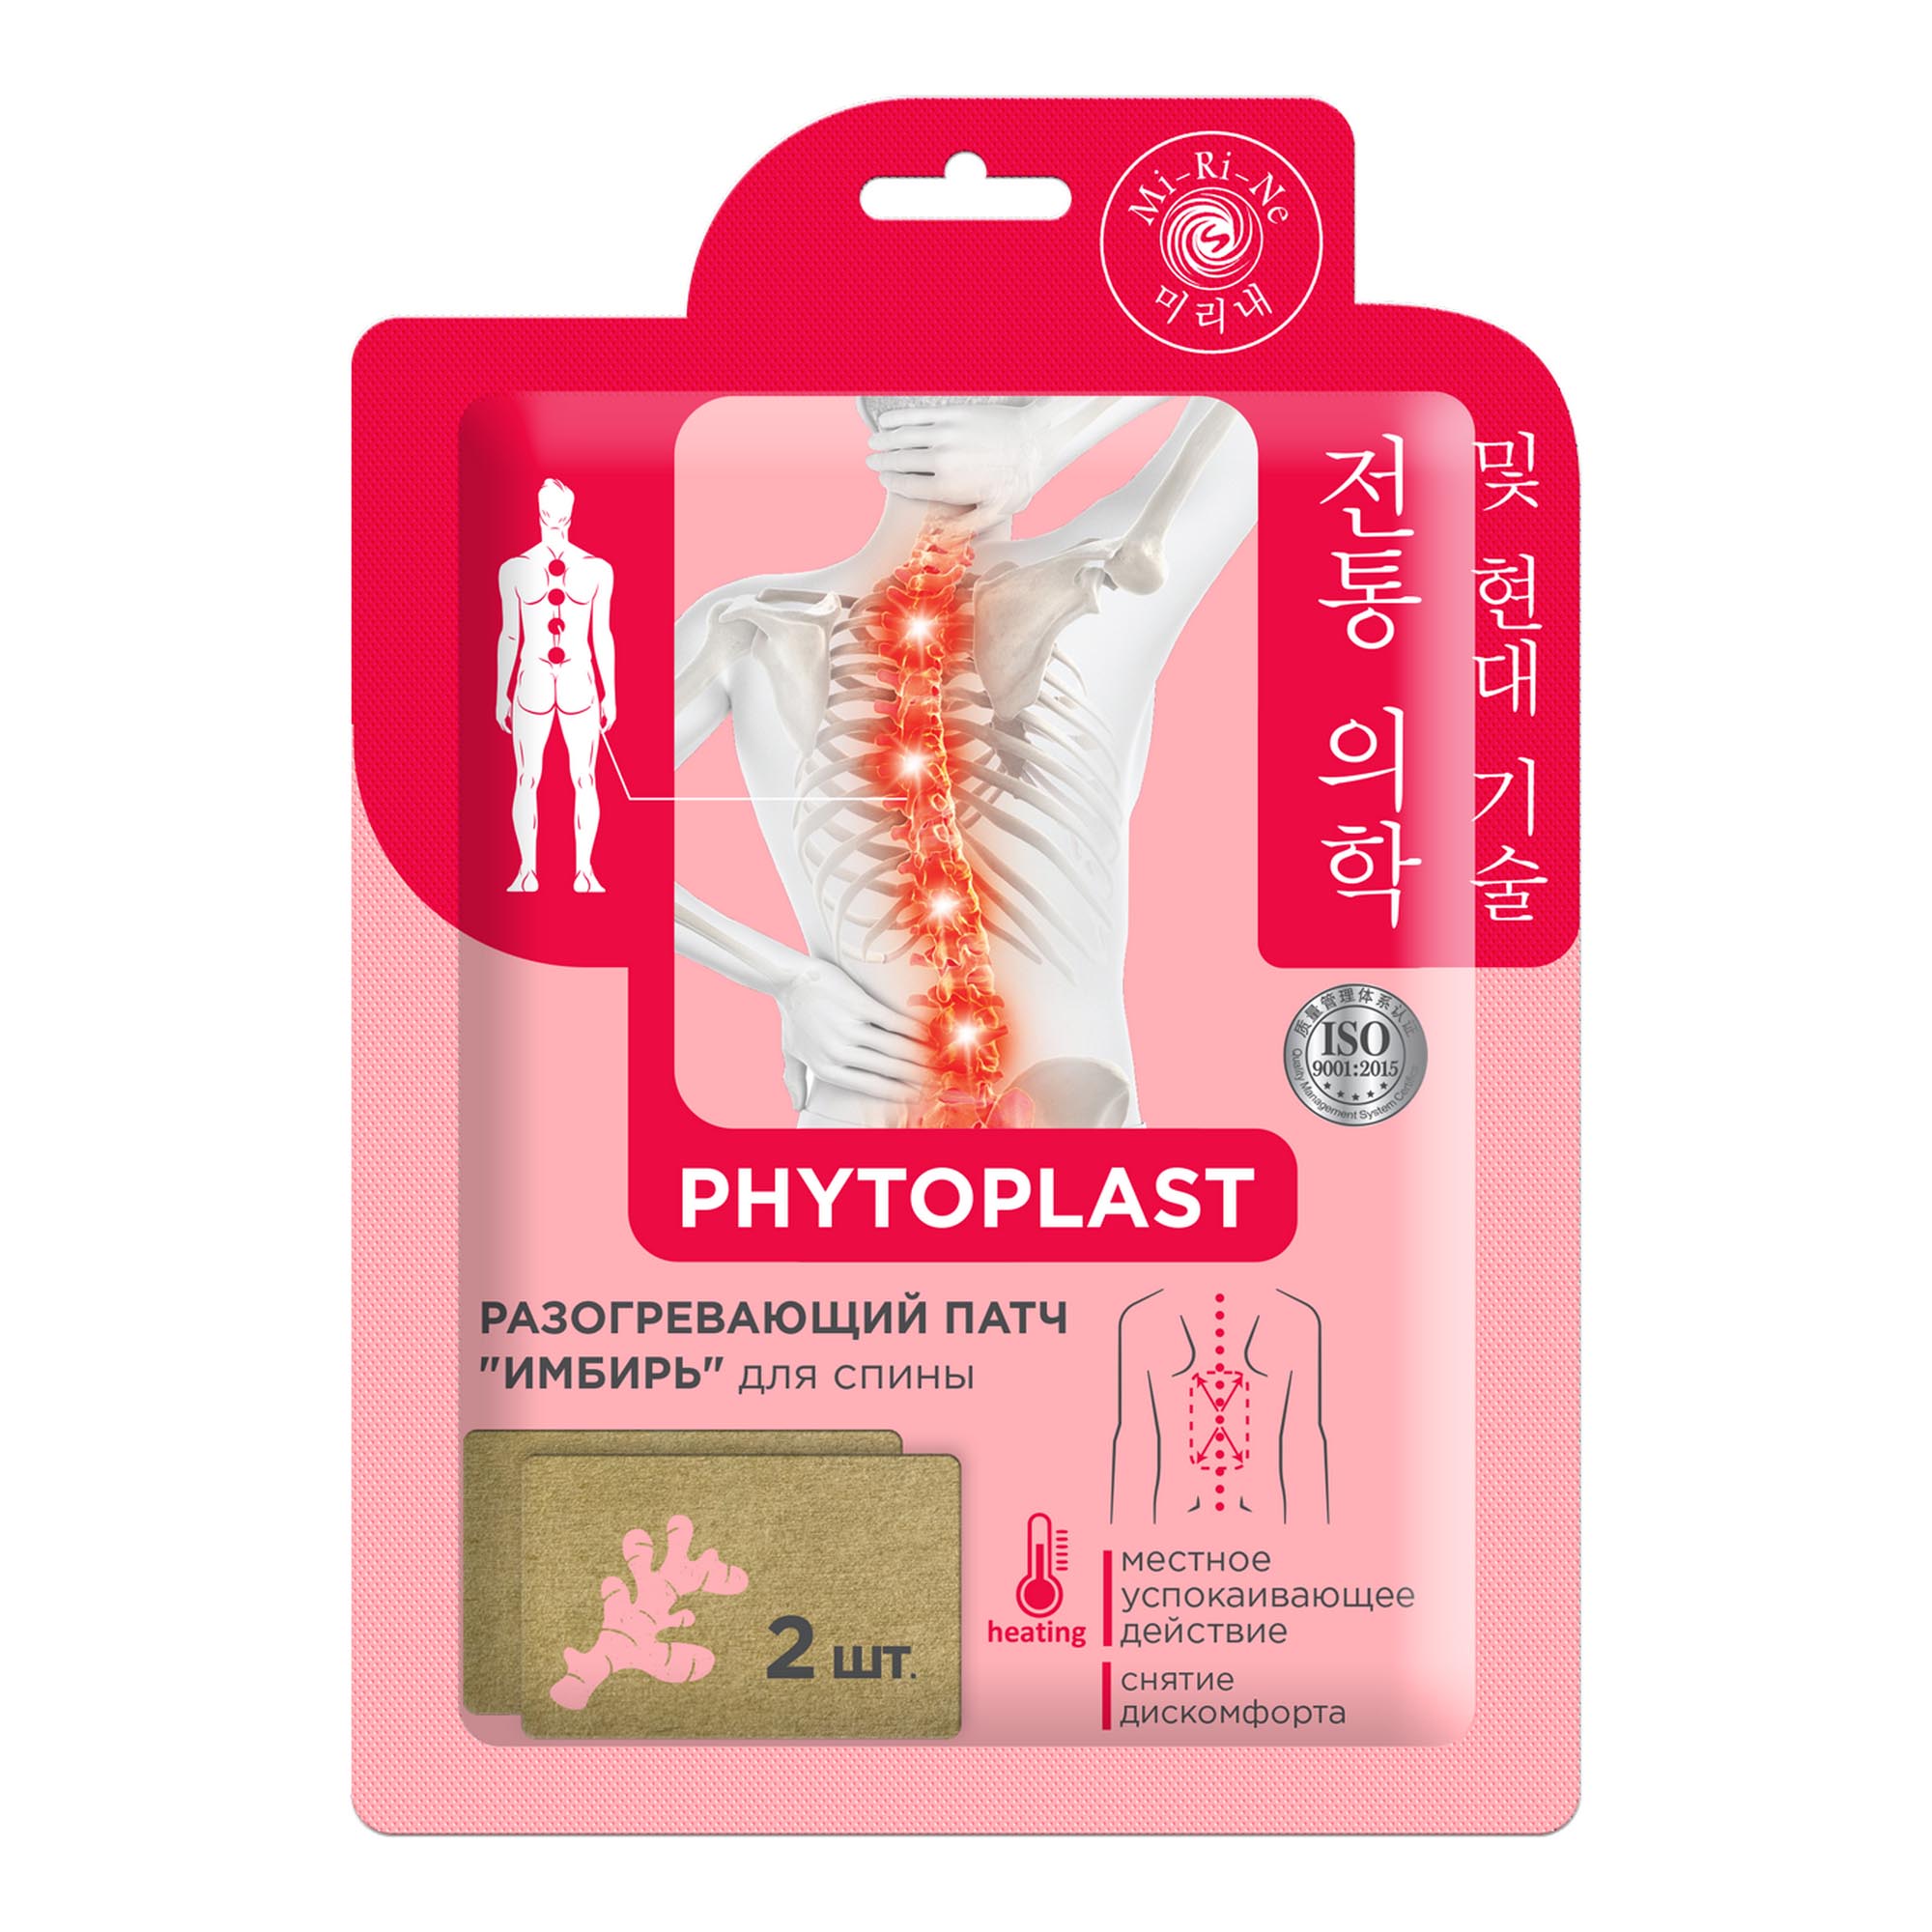 Phytoplast Имбирь разогревающий для спины патчи 2 шт.